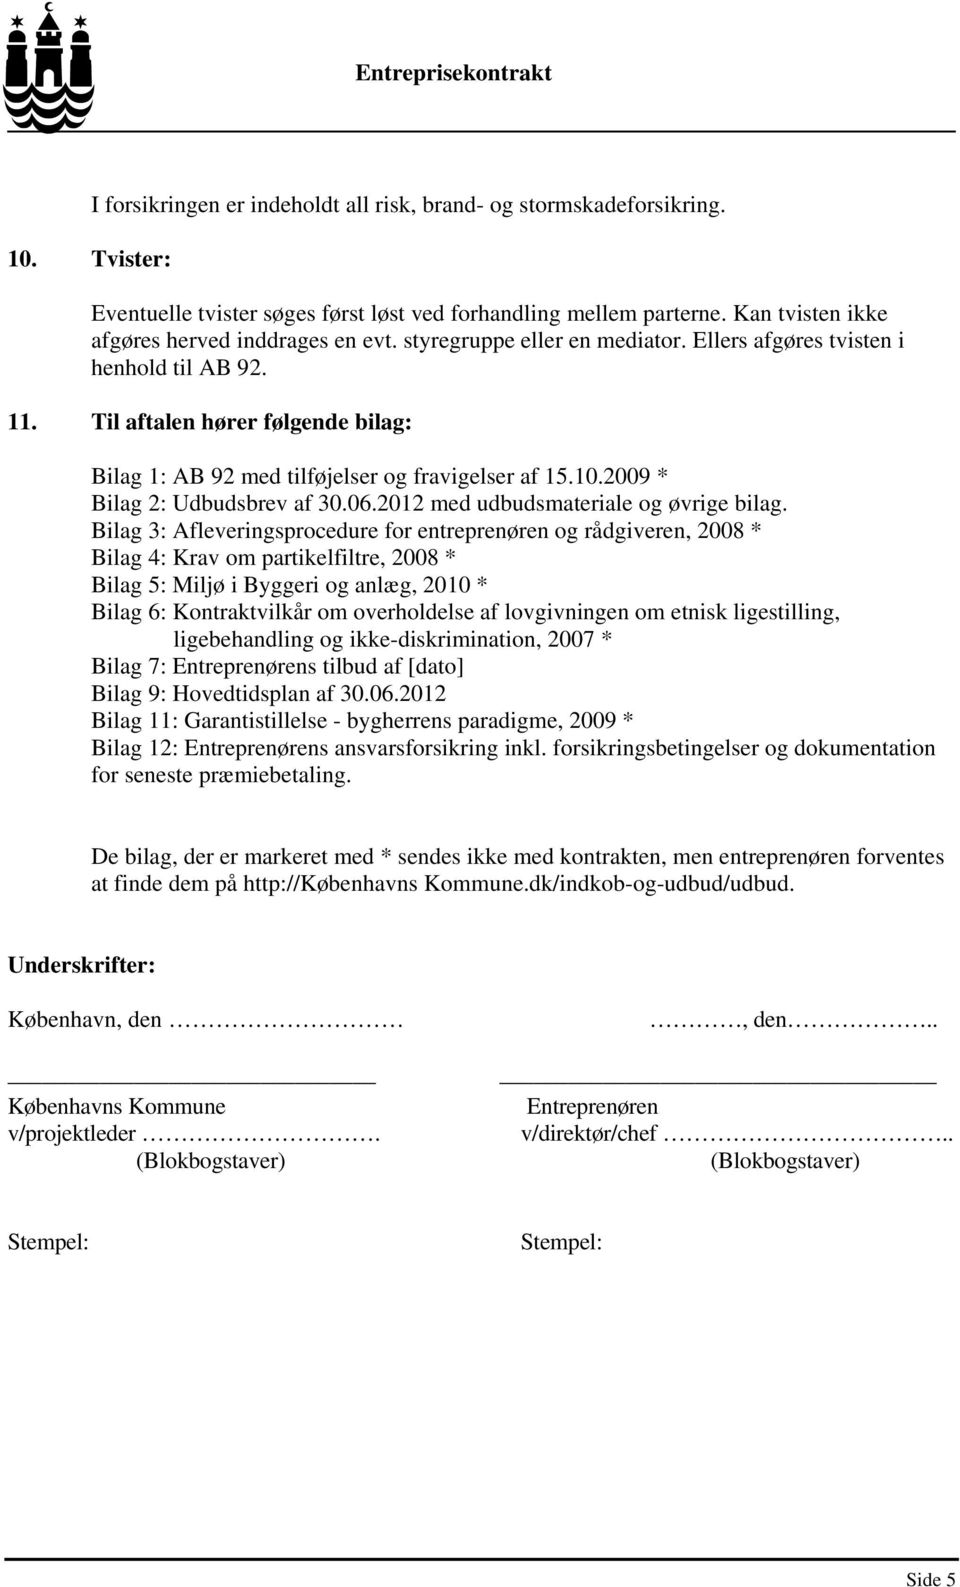 Til aftalen hører følgende bilag: Bilag 1: AB 92 med tilføjelser og fravigelser af 15.10.2009 * Bilag 2: Udbudsbrev af 30.06.2012 med udbudsmateriale og øvrige bilag.